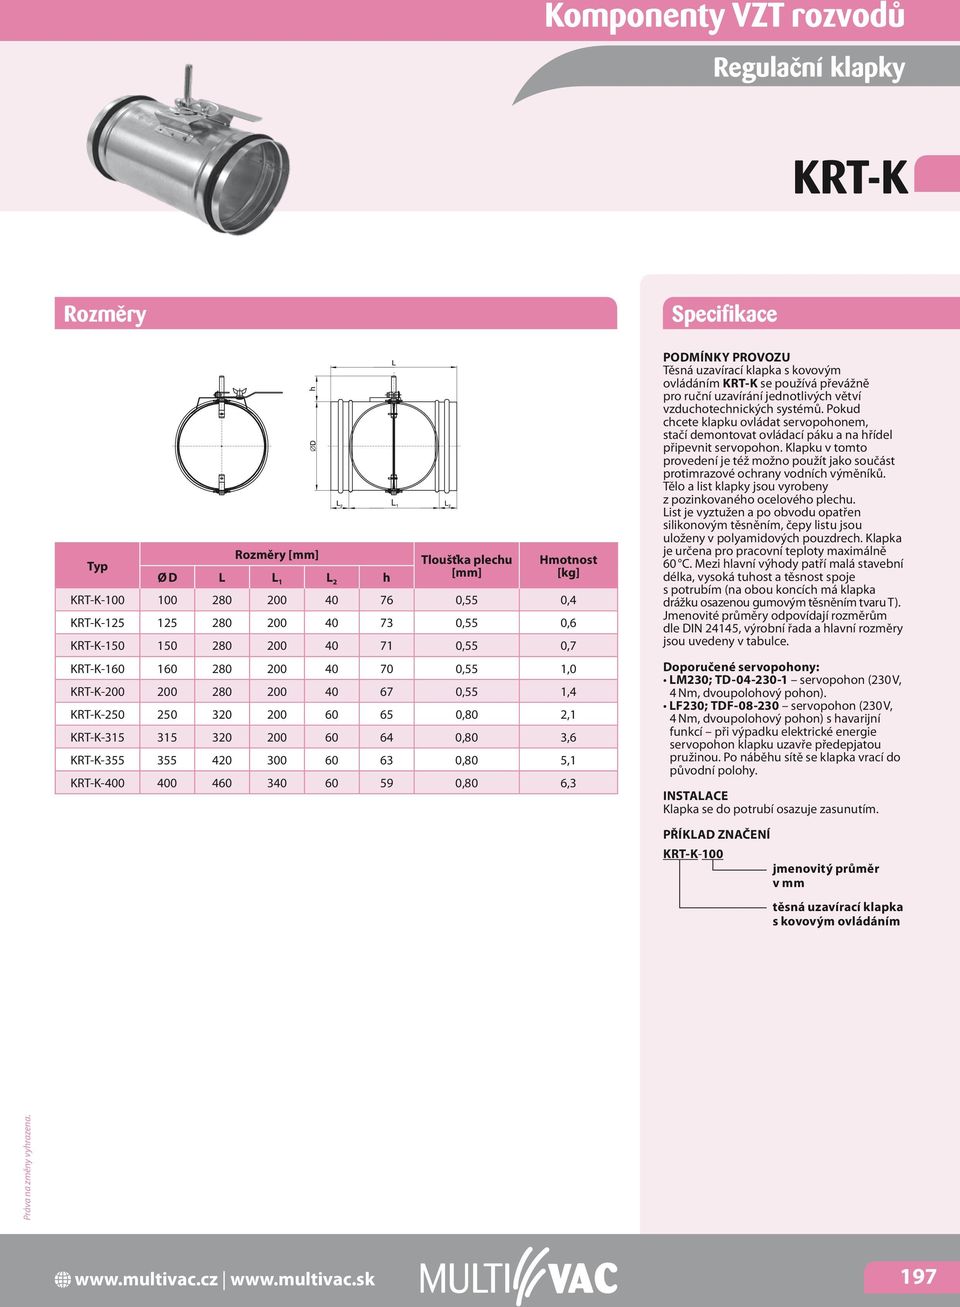 59 0,80 6,3 Těsná uzavírací klapka s kovovým ovládáním KRT-K se používá převážně pro ruční uzavírání jednotlivých větví vzduchotechnických systémů.